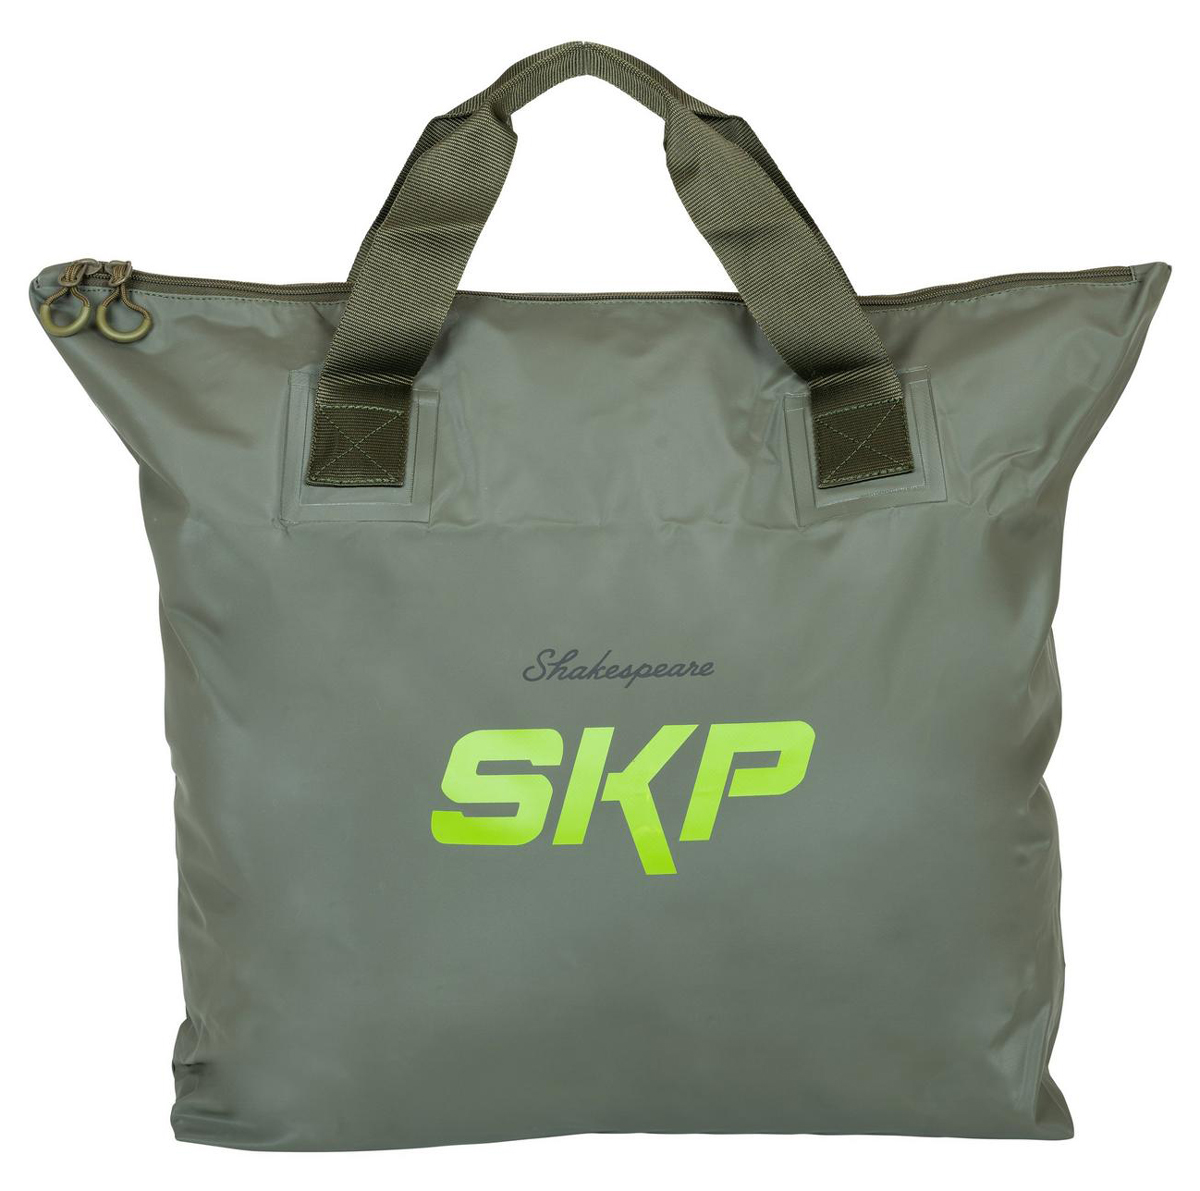 Shakespeare SKP Net/Wader Bag